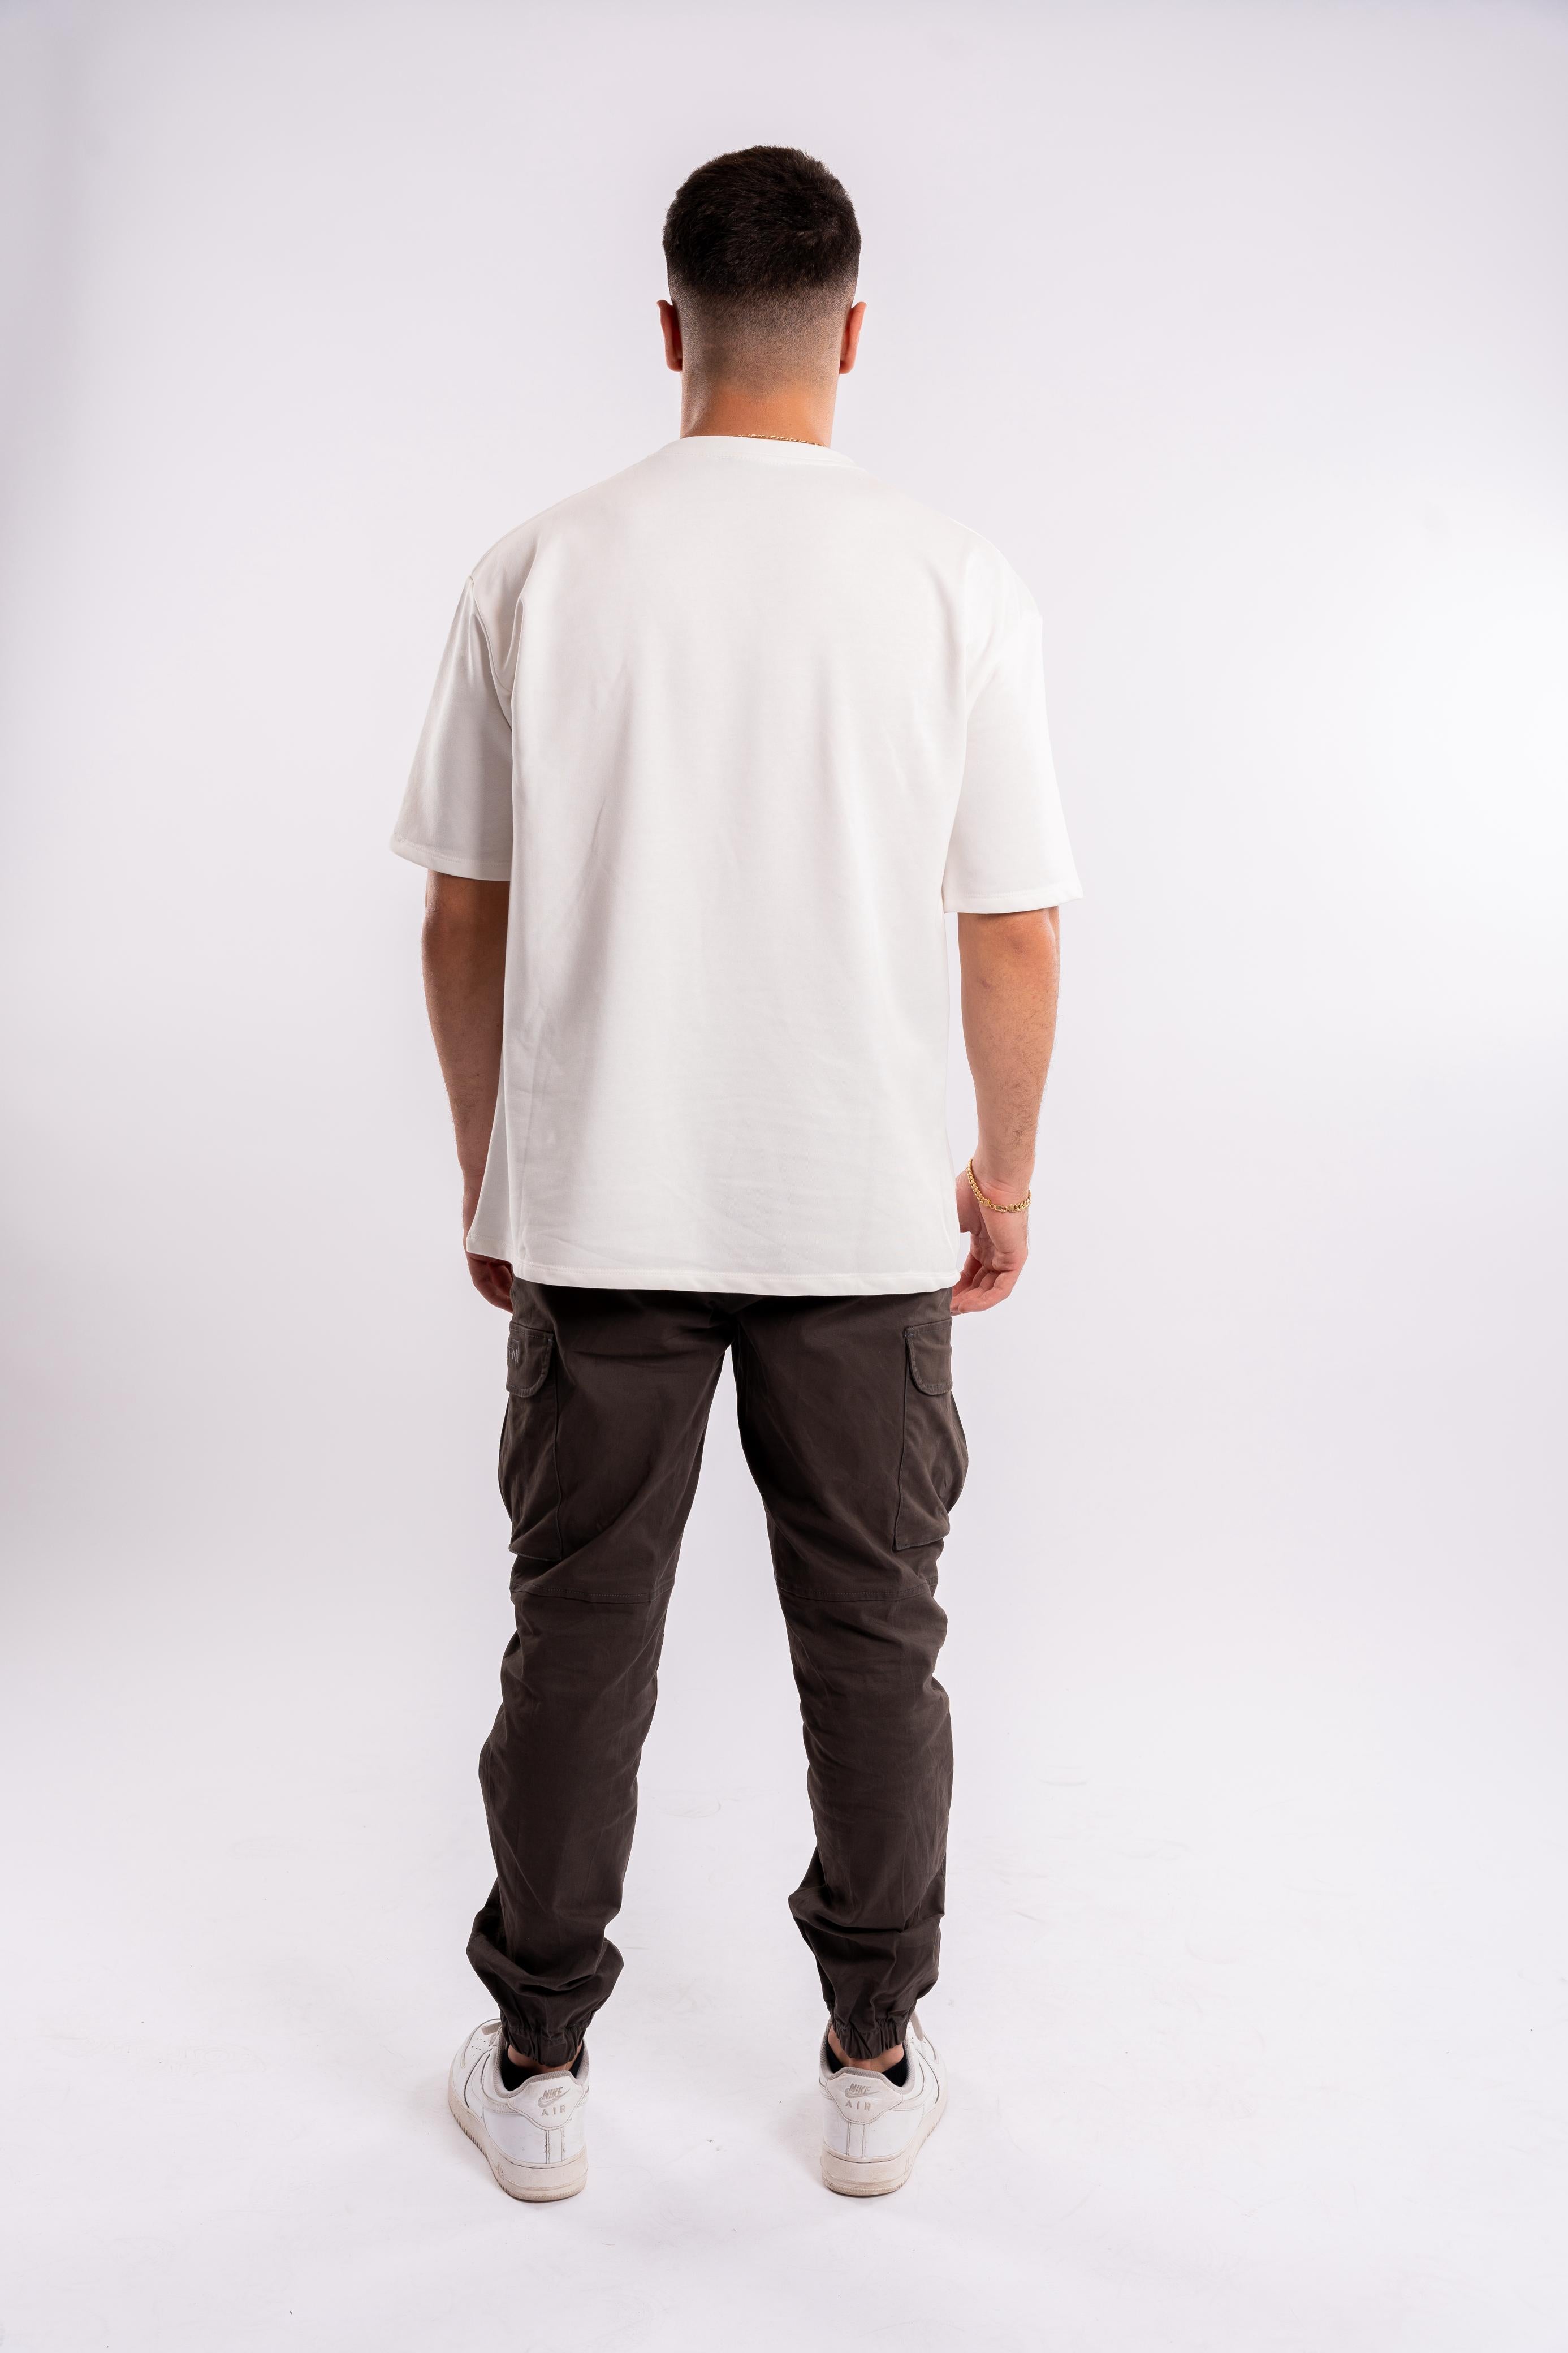 Basic white - T-shirt